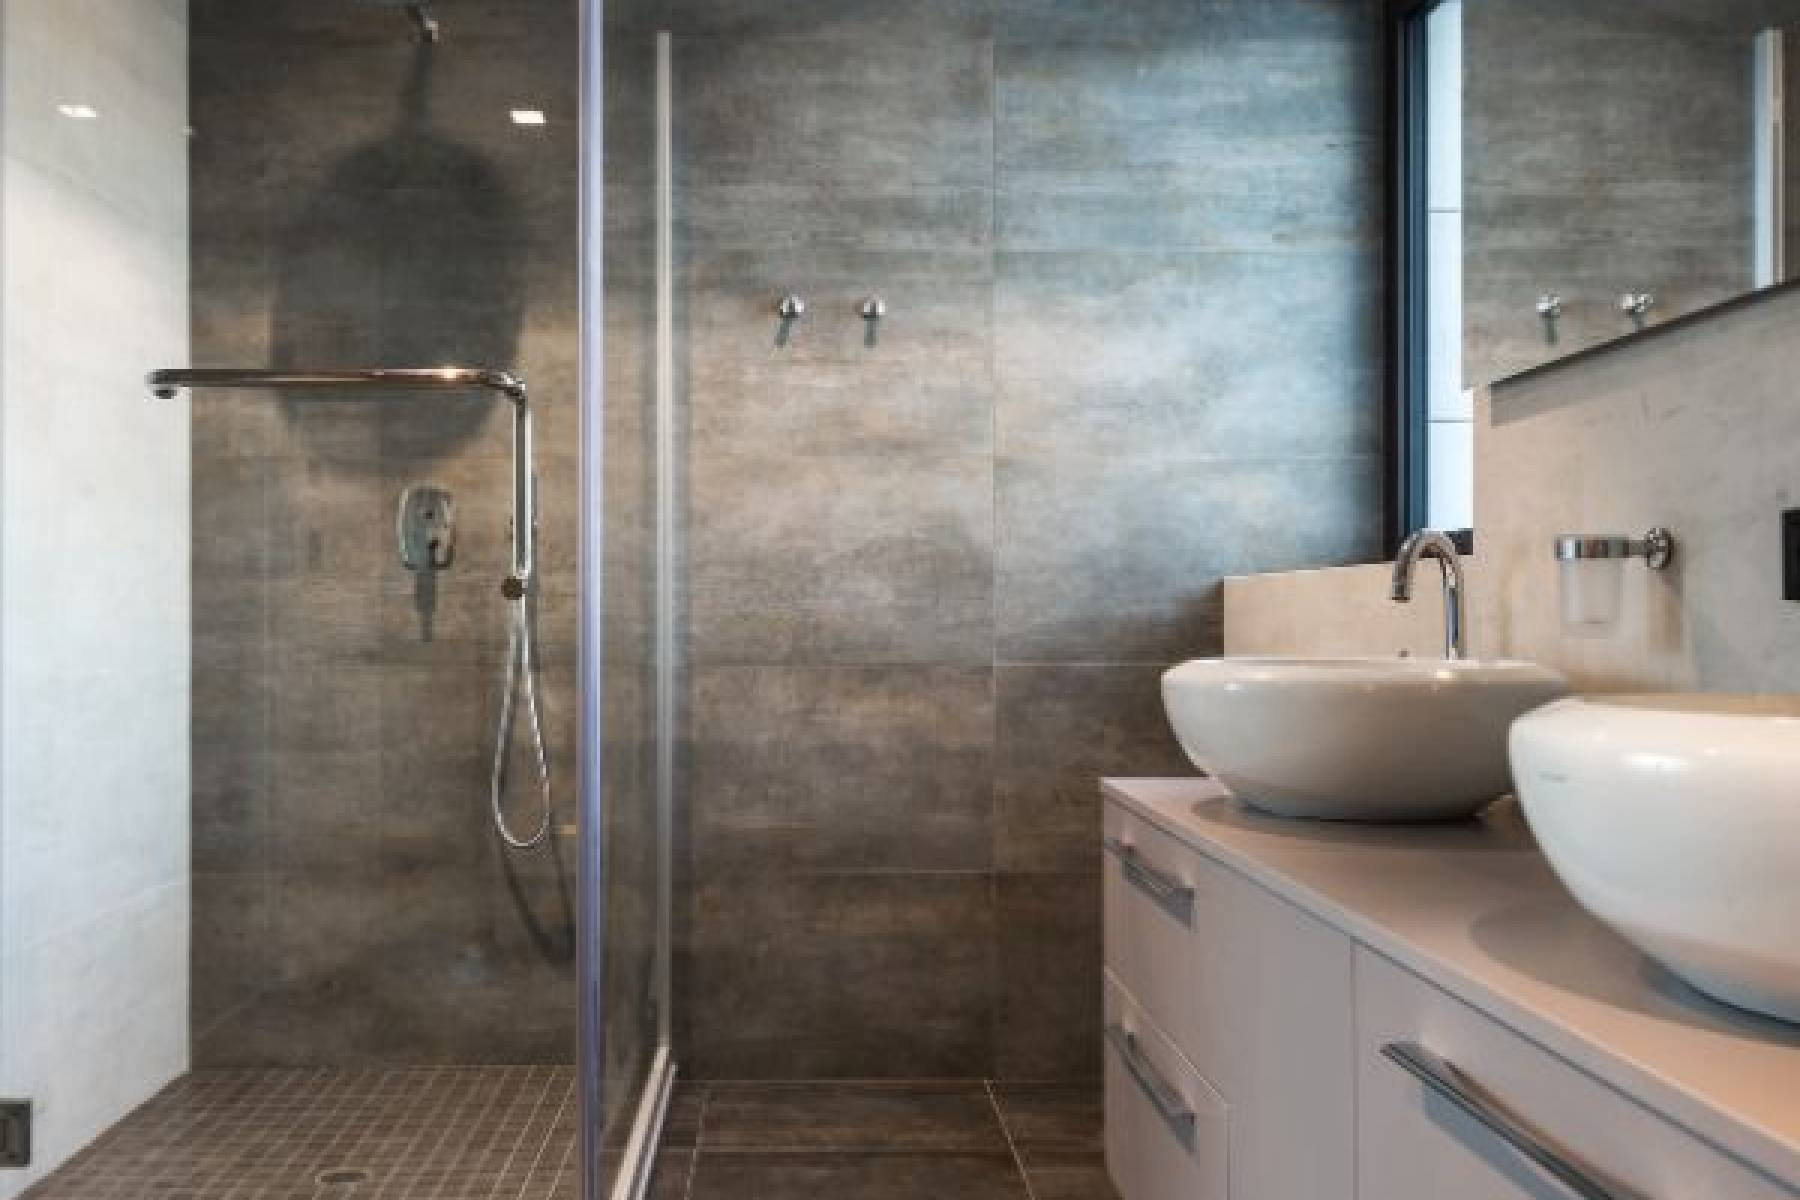 Kabina prysznicowa - nowoczesne rozwiązania dla Twojej łazienki